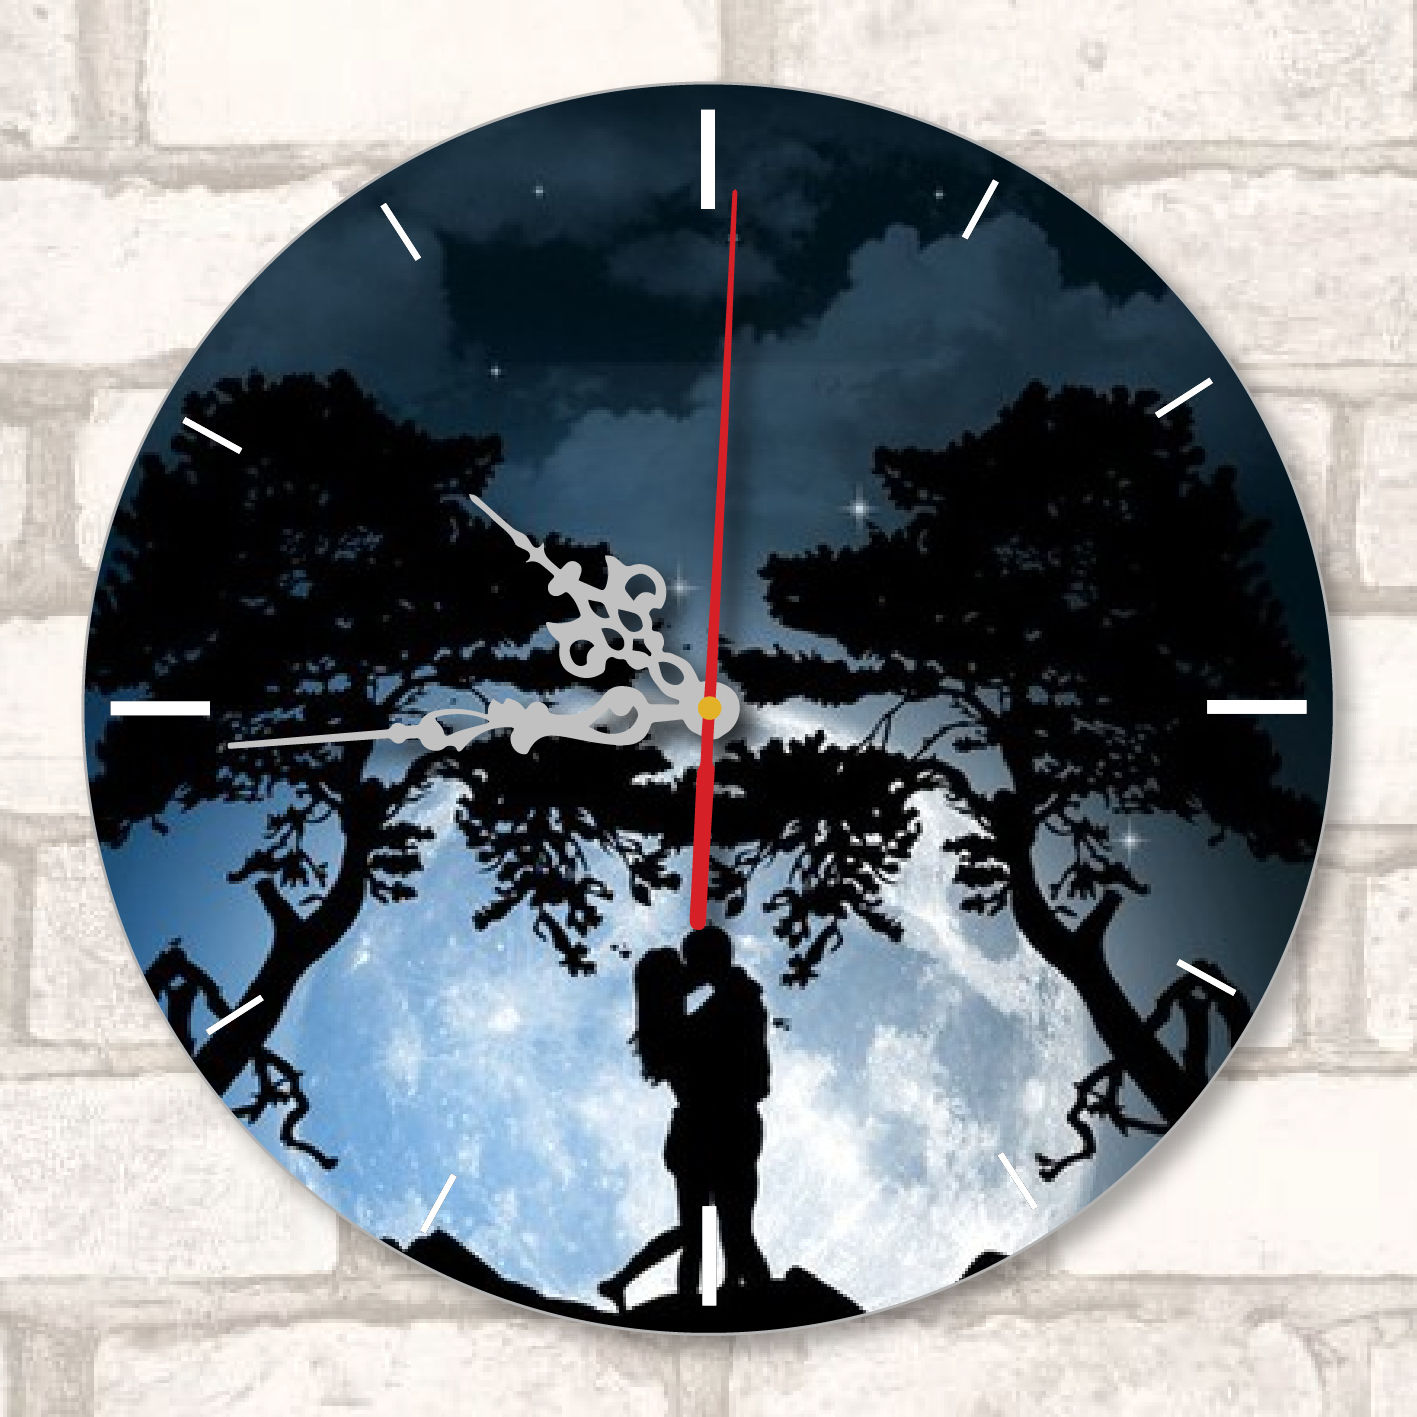 Impression sur horloge murale ronde avec aiguilles argentées (24 cm)